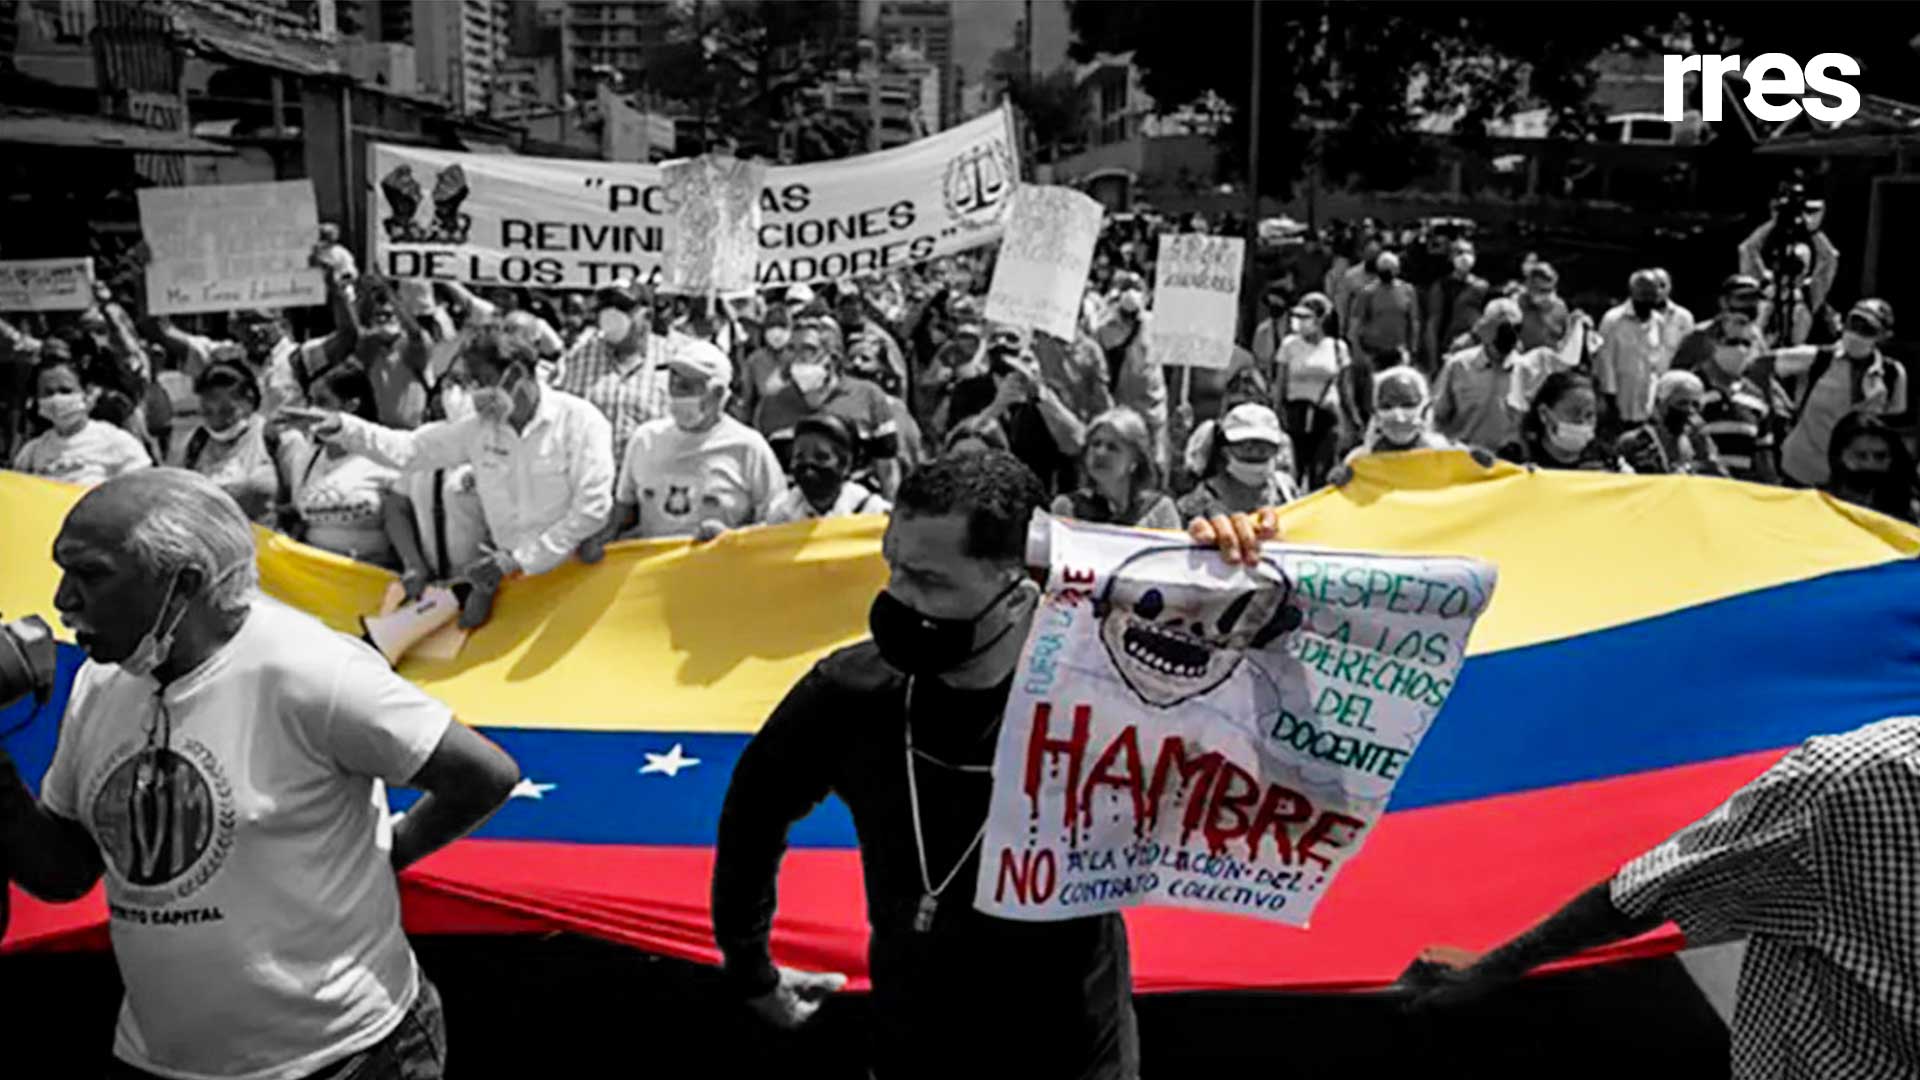 La reacción de la tiranía ante la protesta laboral, por Froilán Barrios Nieves*